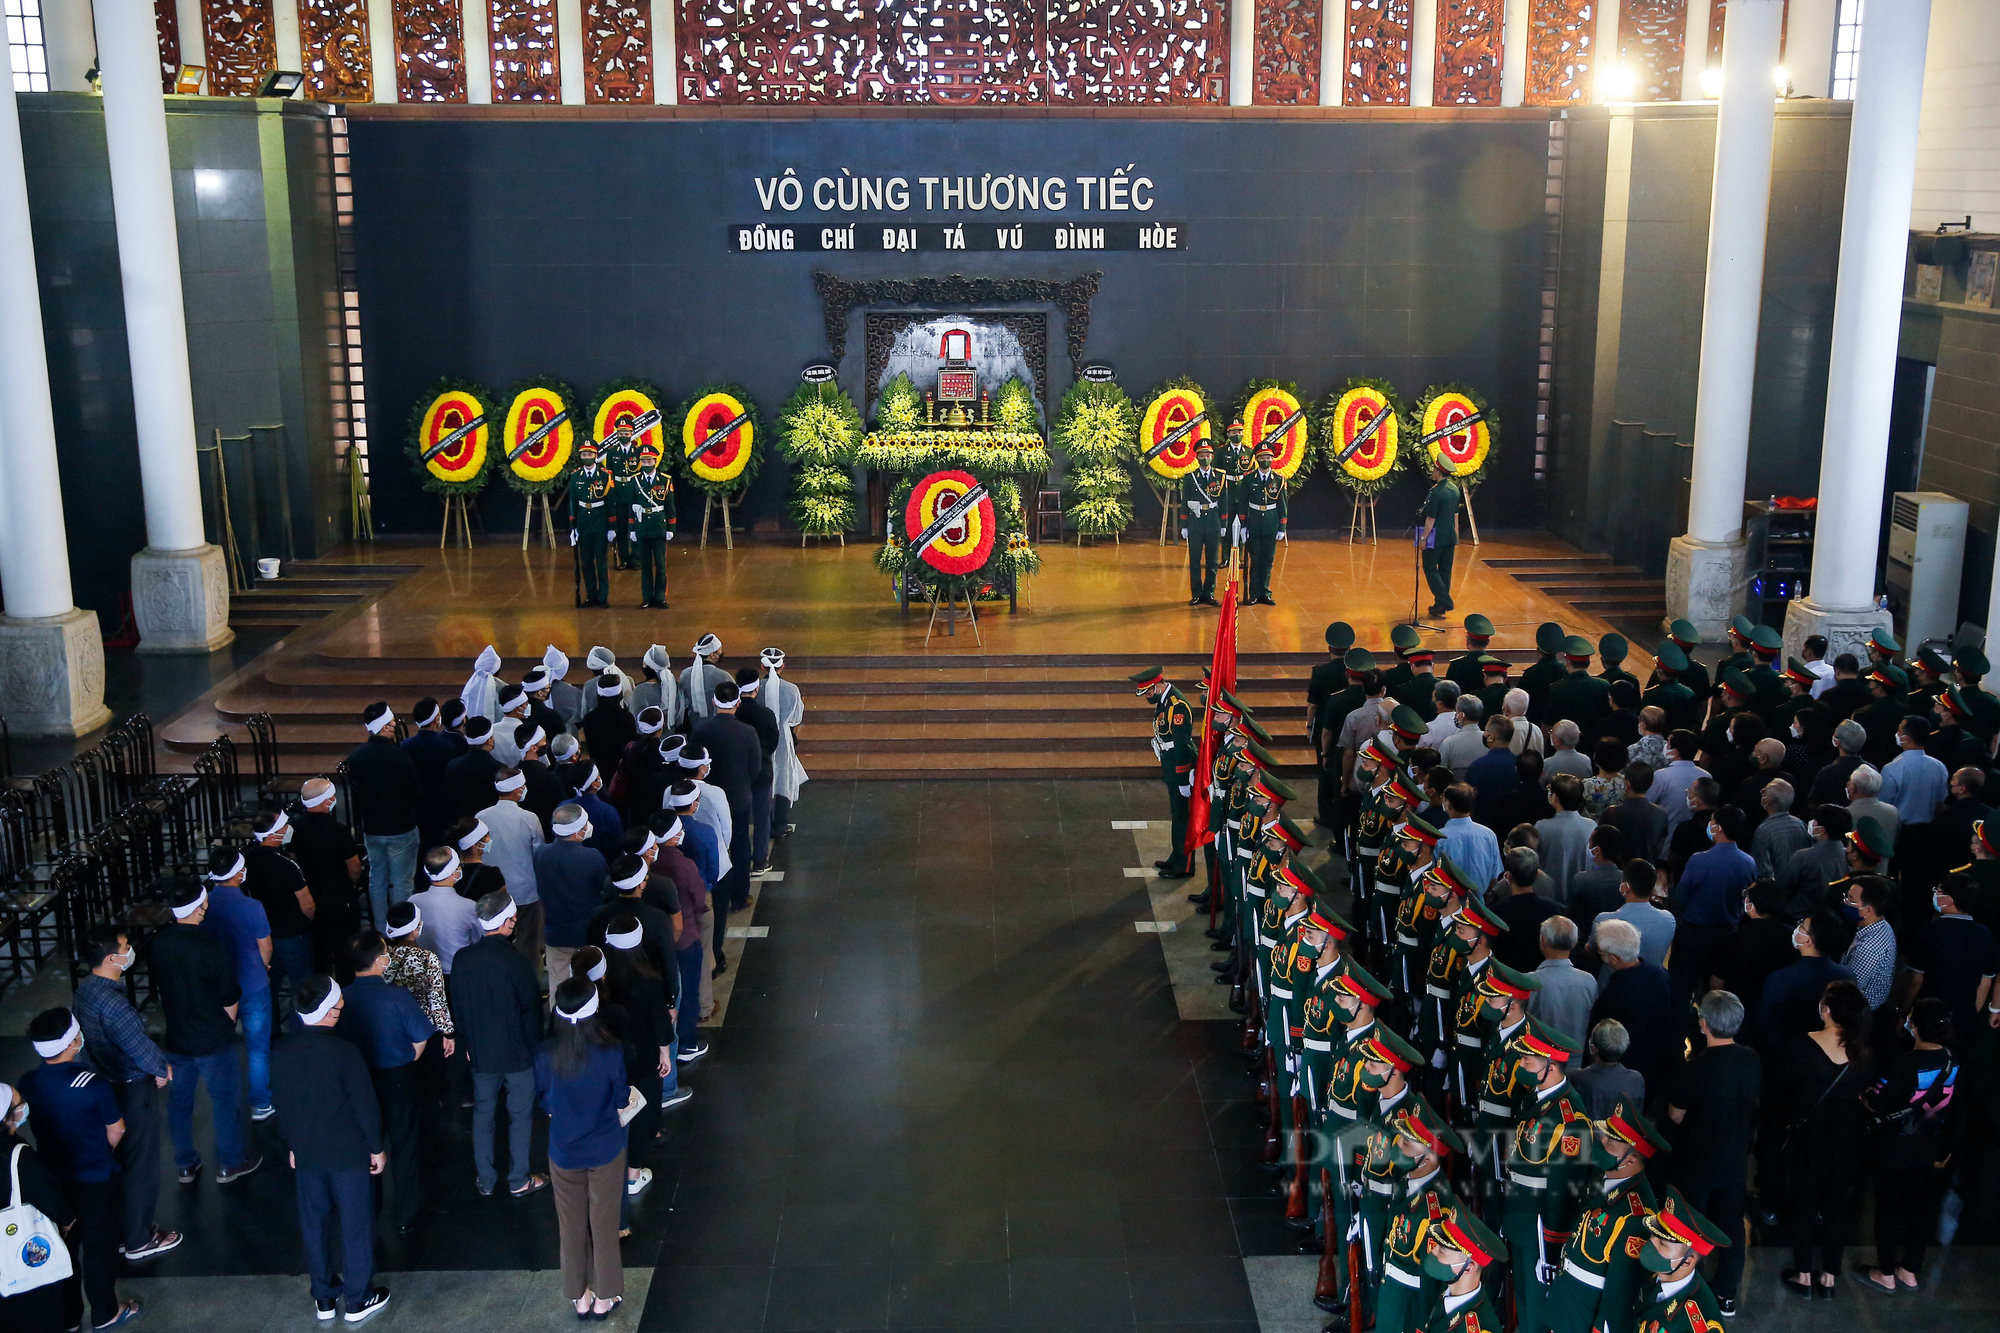 Lễ tang Đại tá Vũ Đình Hòe-Tiểu đoàn trưởng đánh đồi A1 suốt 38 ngày đêm trong chiến dịch Điện Biên Phủ - Ảnh 1.